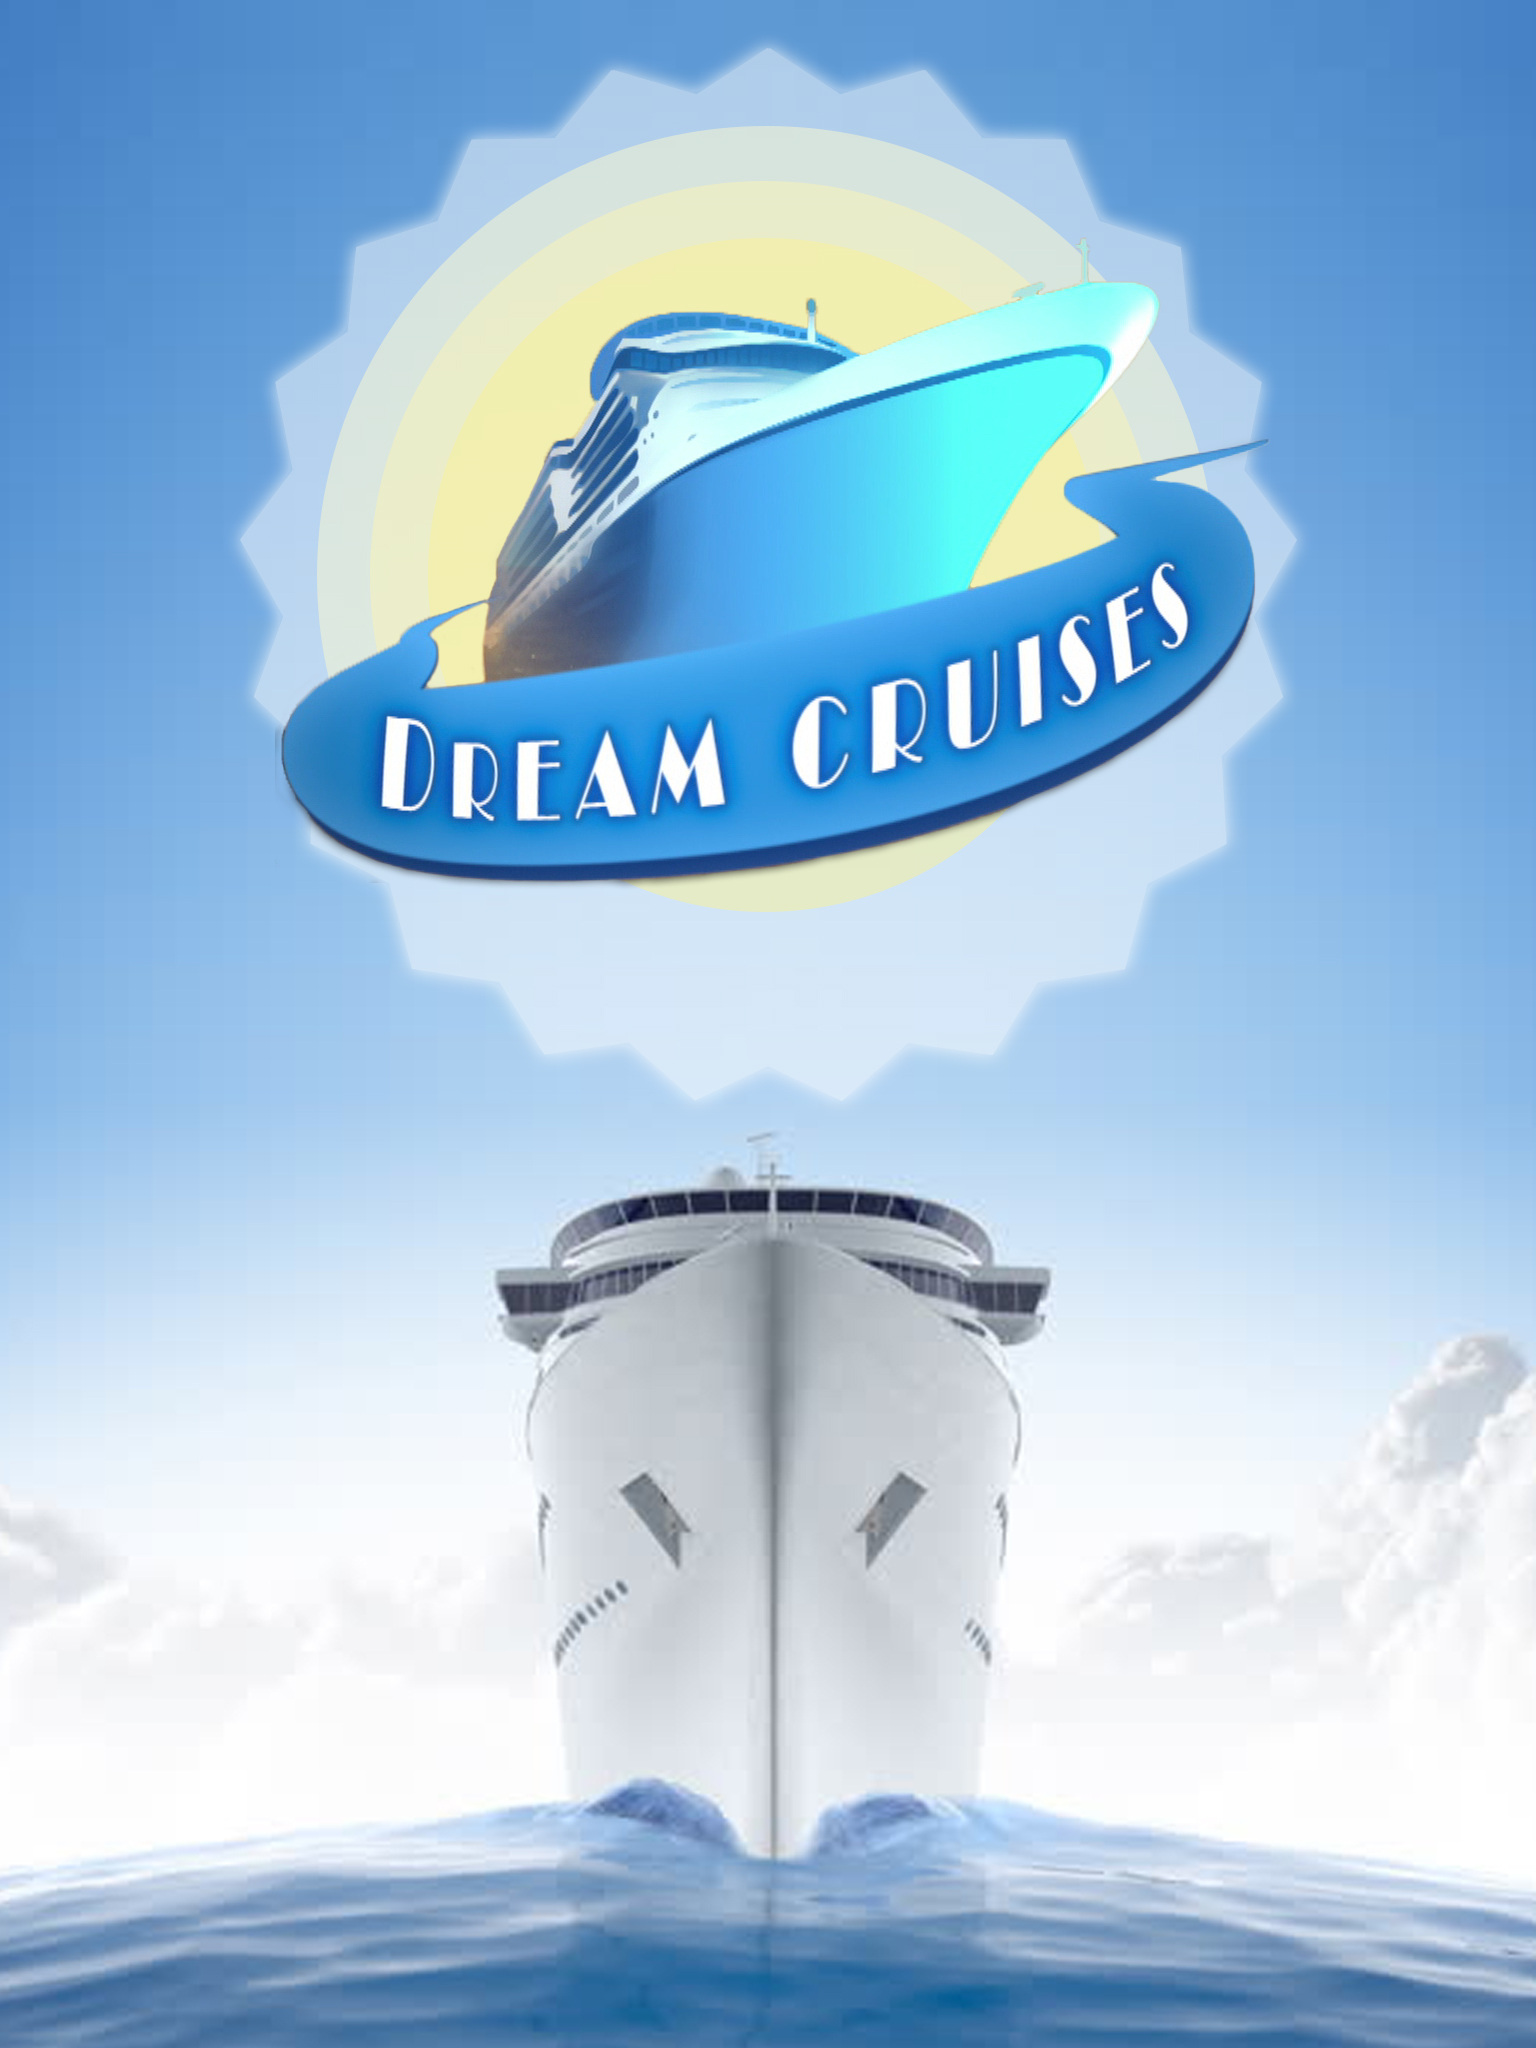 dream cruises.com